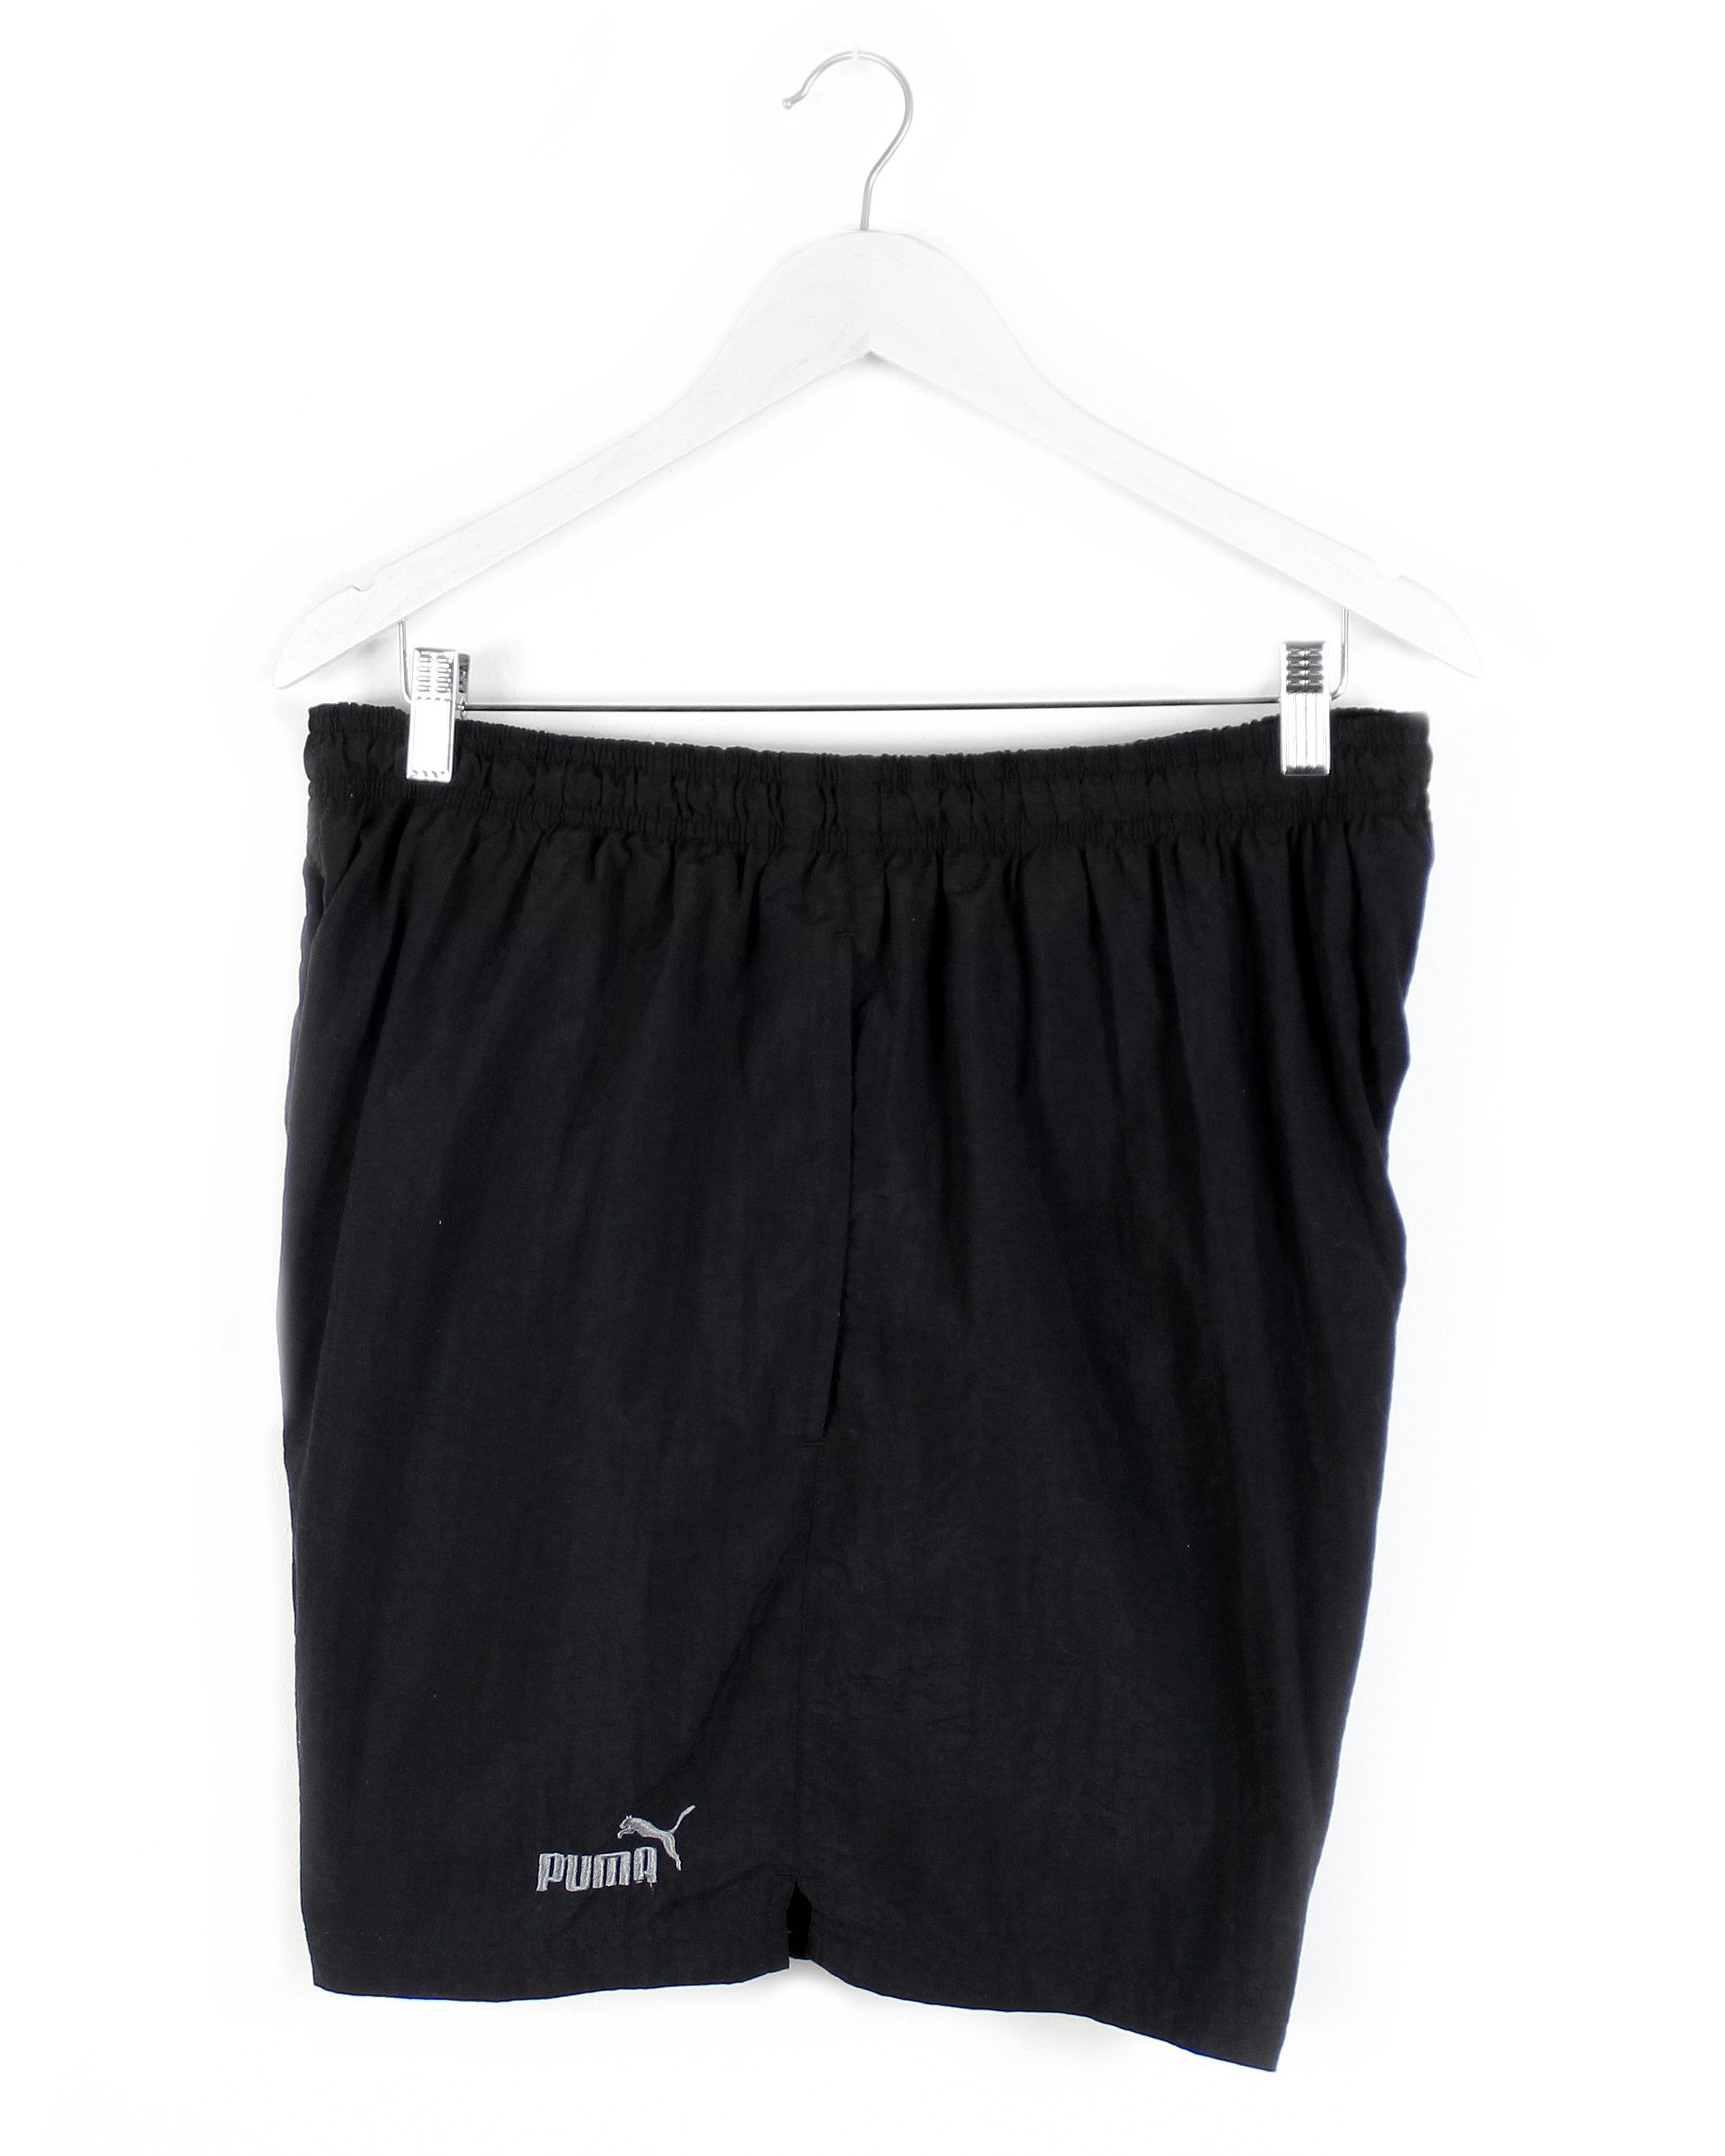 Vintage 90s vintage PUMA shorts black nylon athletic sports XL XXL Size 40" / US 18 - 4 Thumbnail